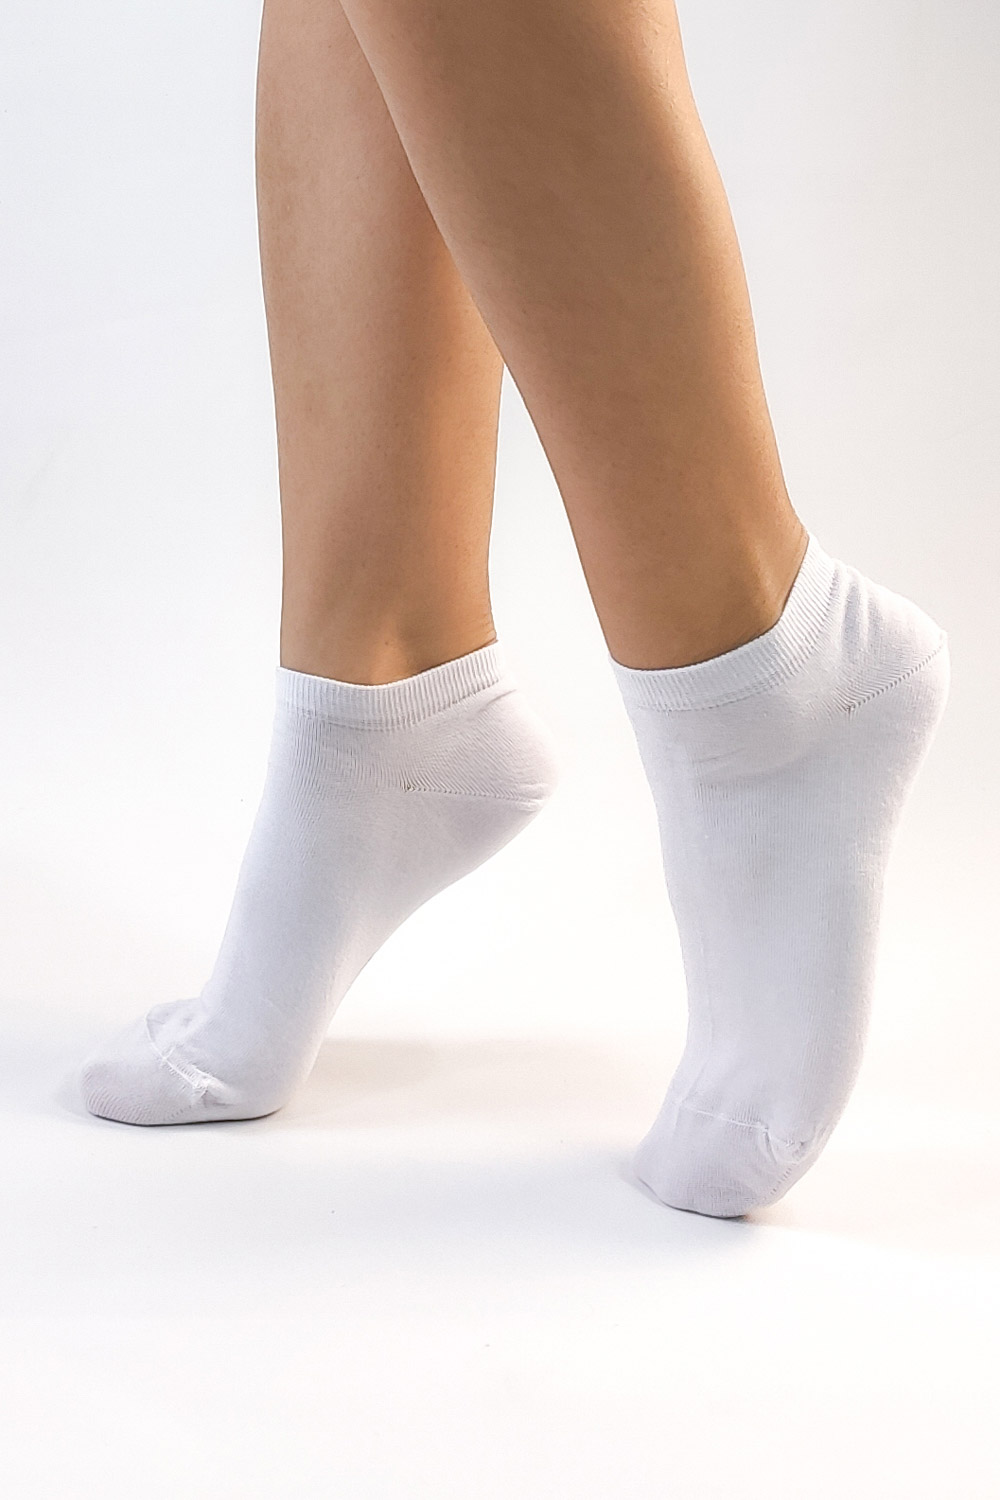 γυναικείες λευκες κοντές κάλτσες